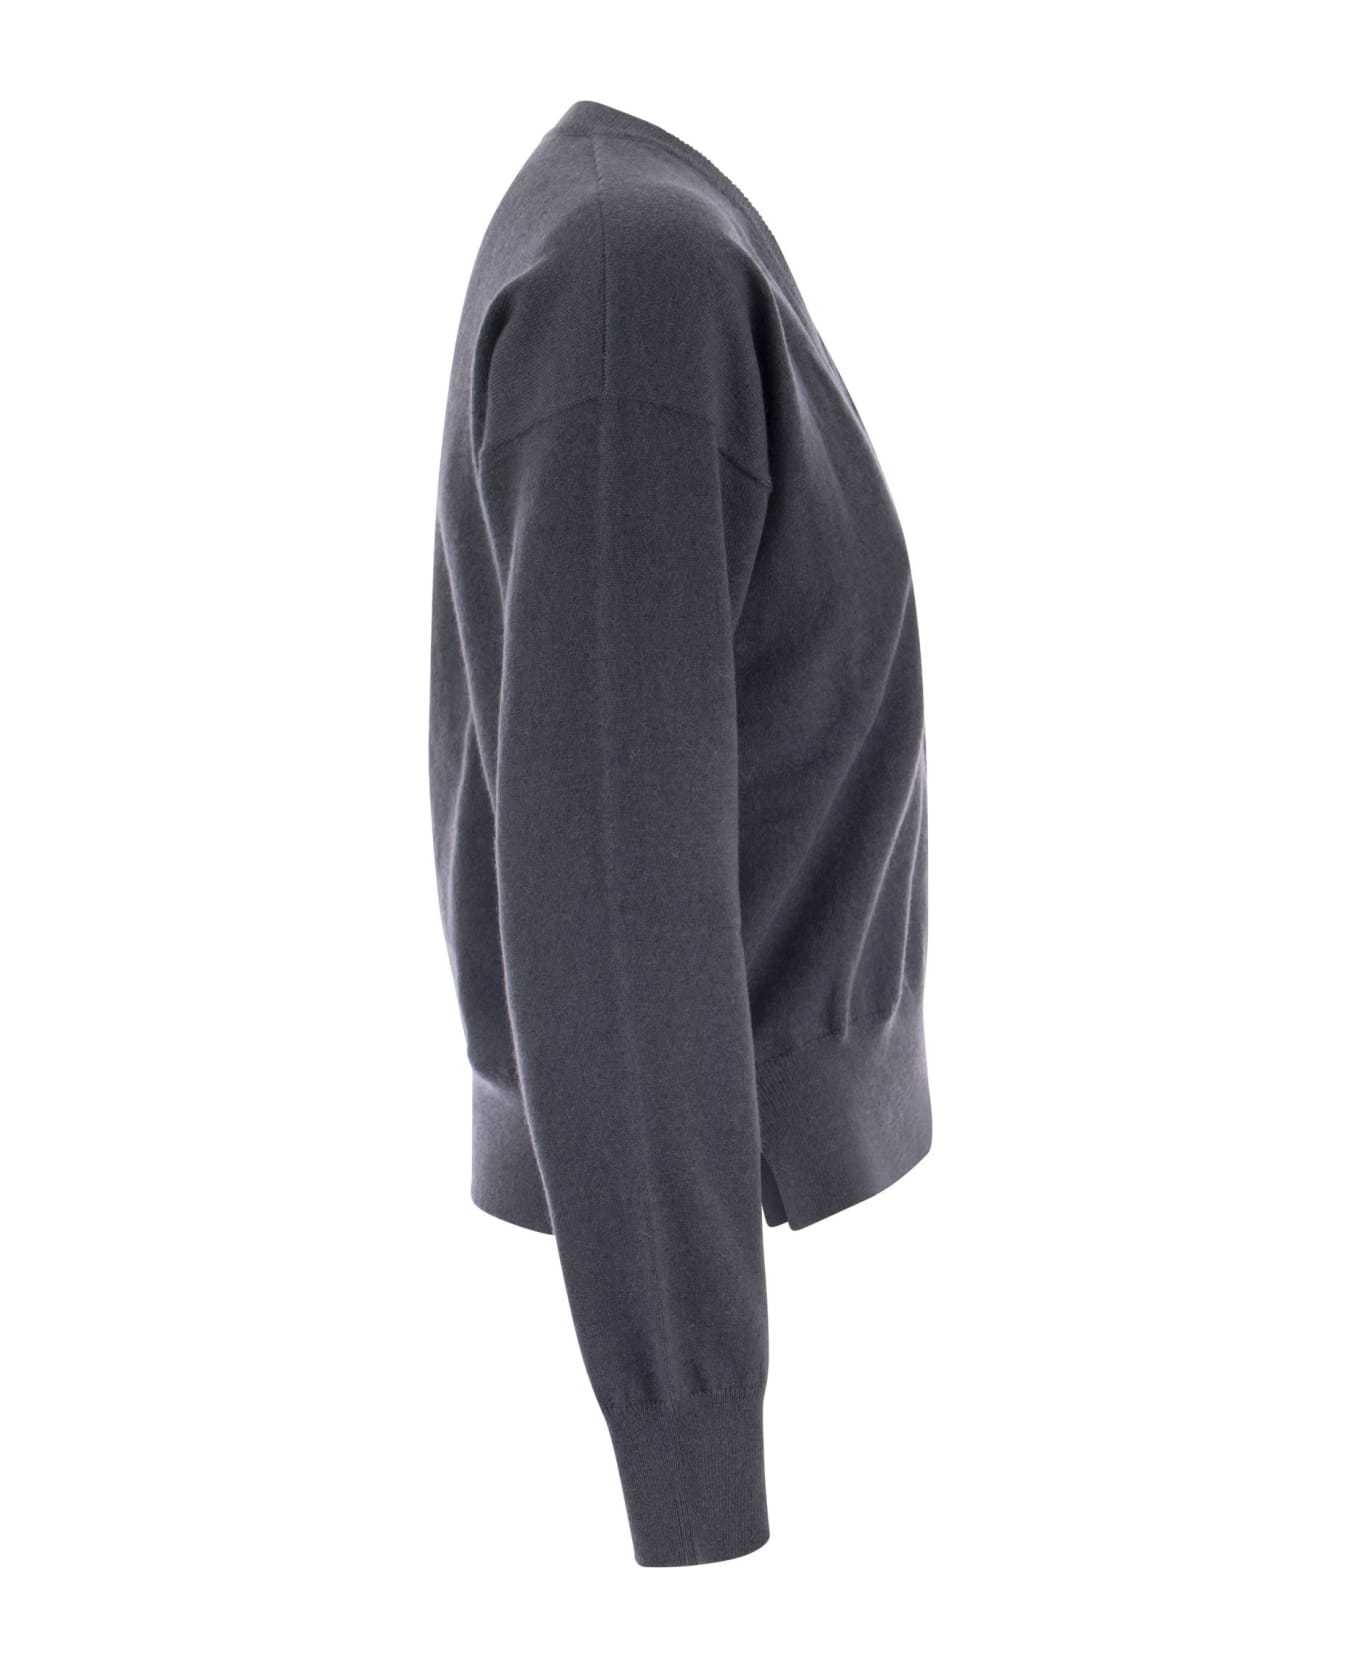 Brunello Cucinelli Cashmere Sweater With Pocket - Dark Blue ニットウェア